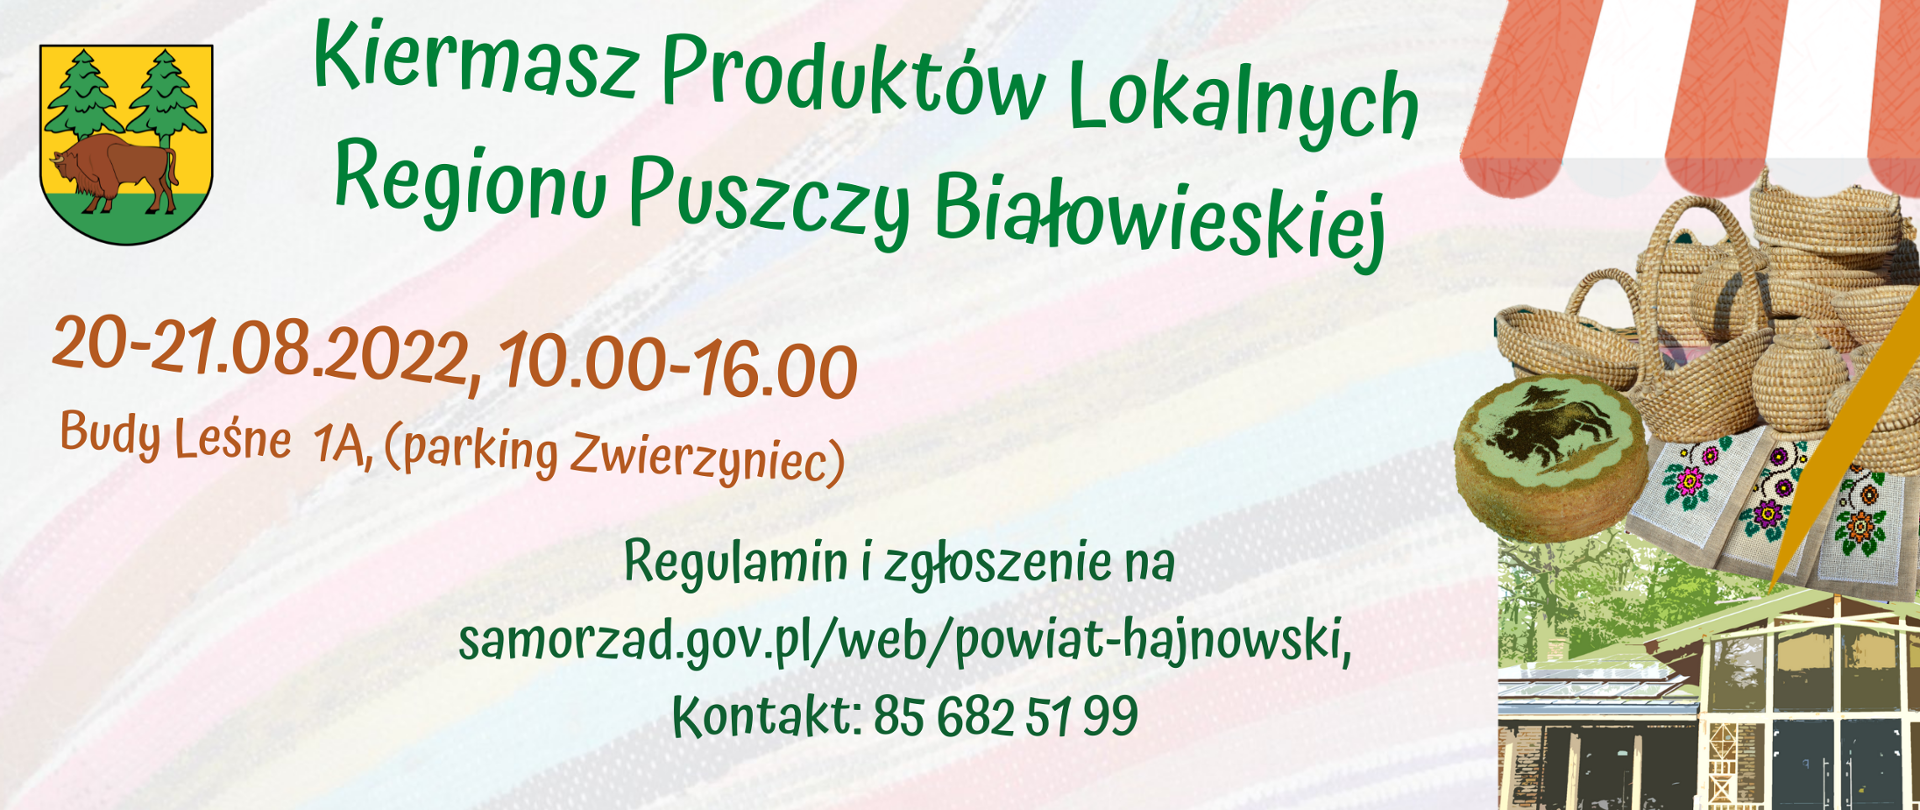 Kiermasz Produktów Lokalnych Regionu Puszczy Białowieskiej, 20-21.08.2022 Budy Leśne 1A 